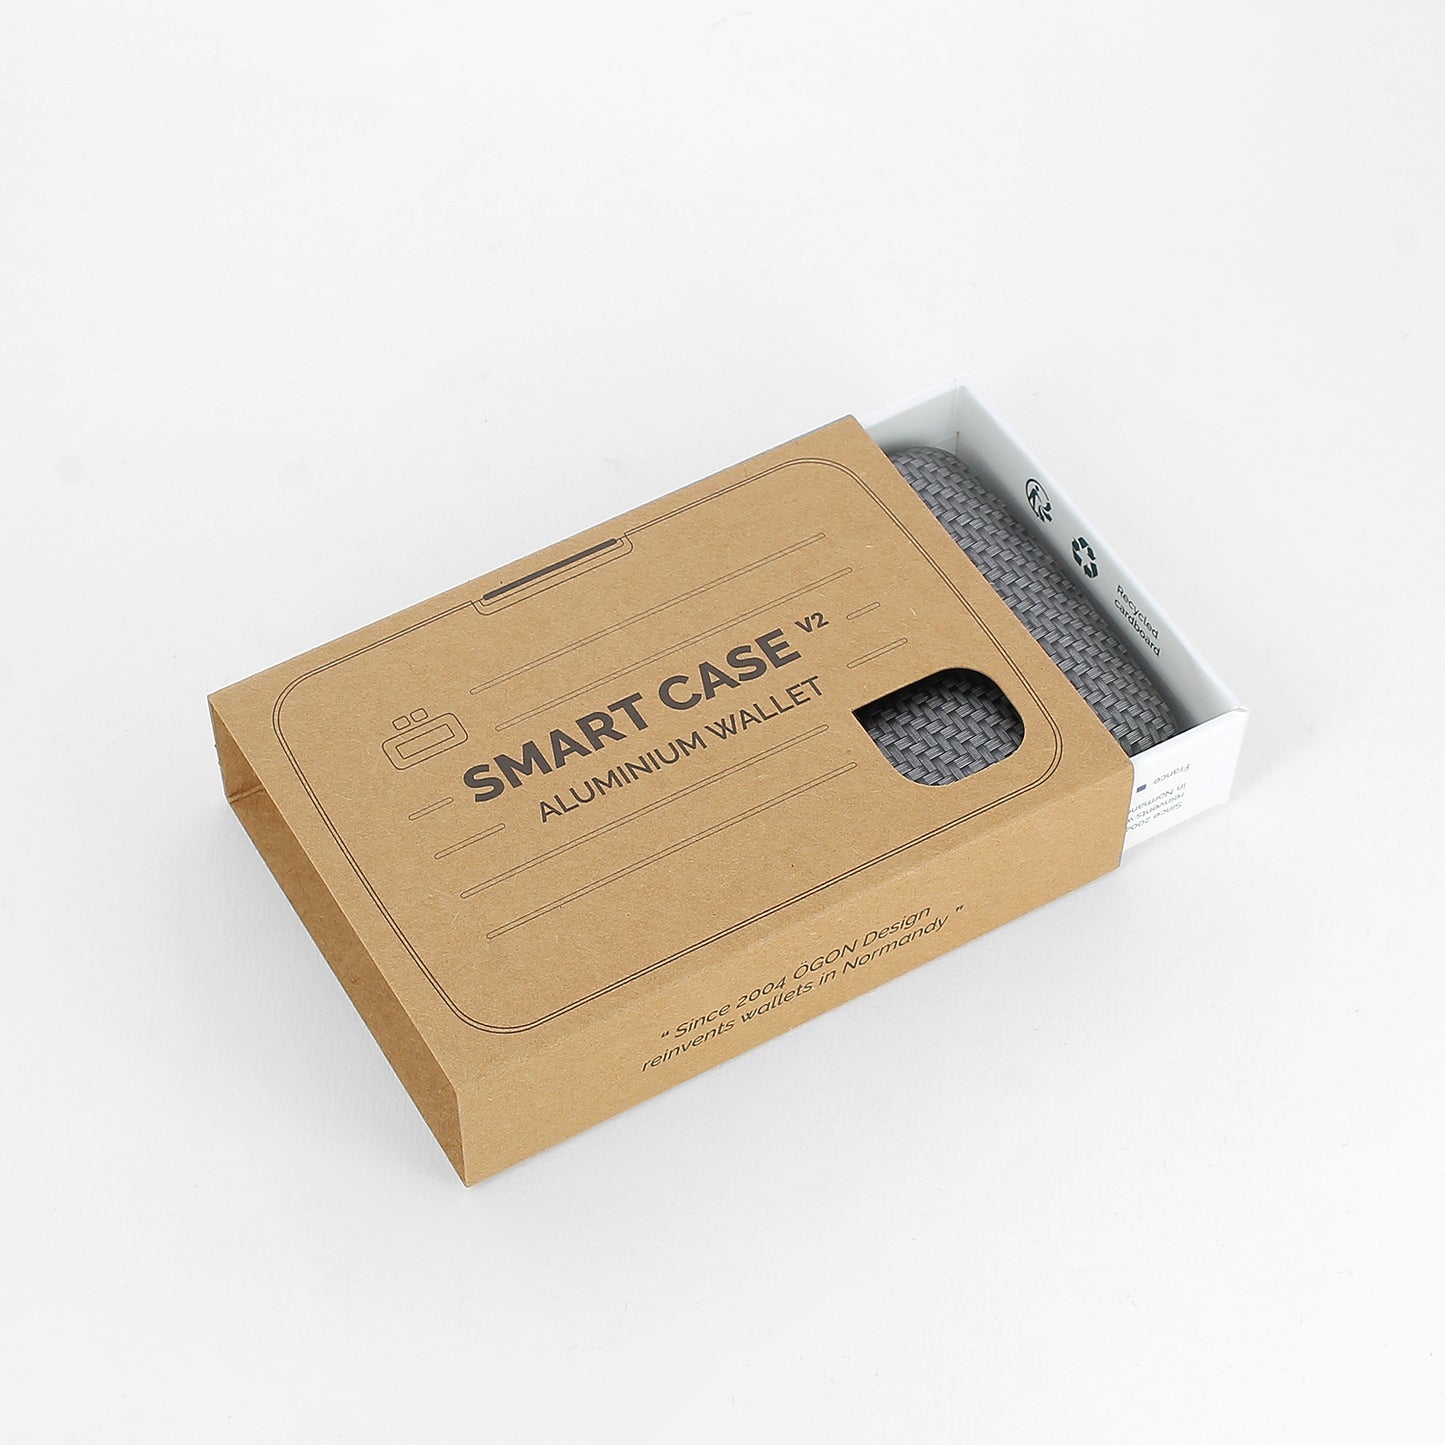 SMART CASE V2 | Sarja com efeito de carbono